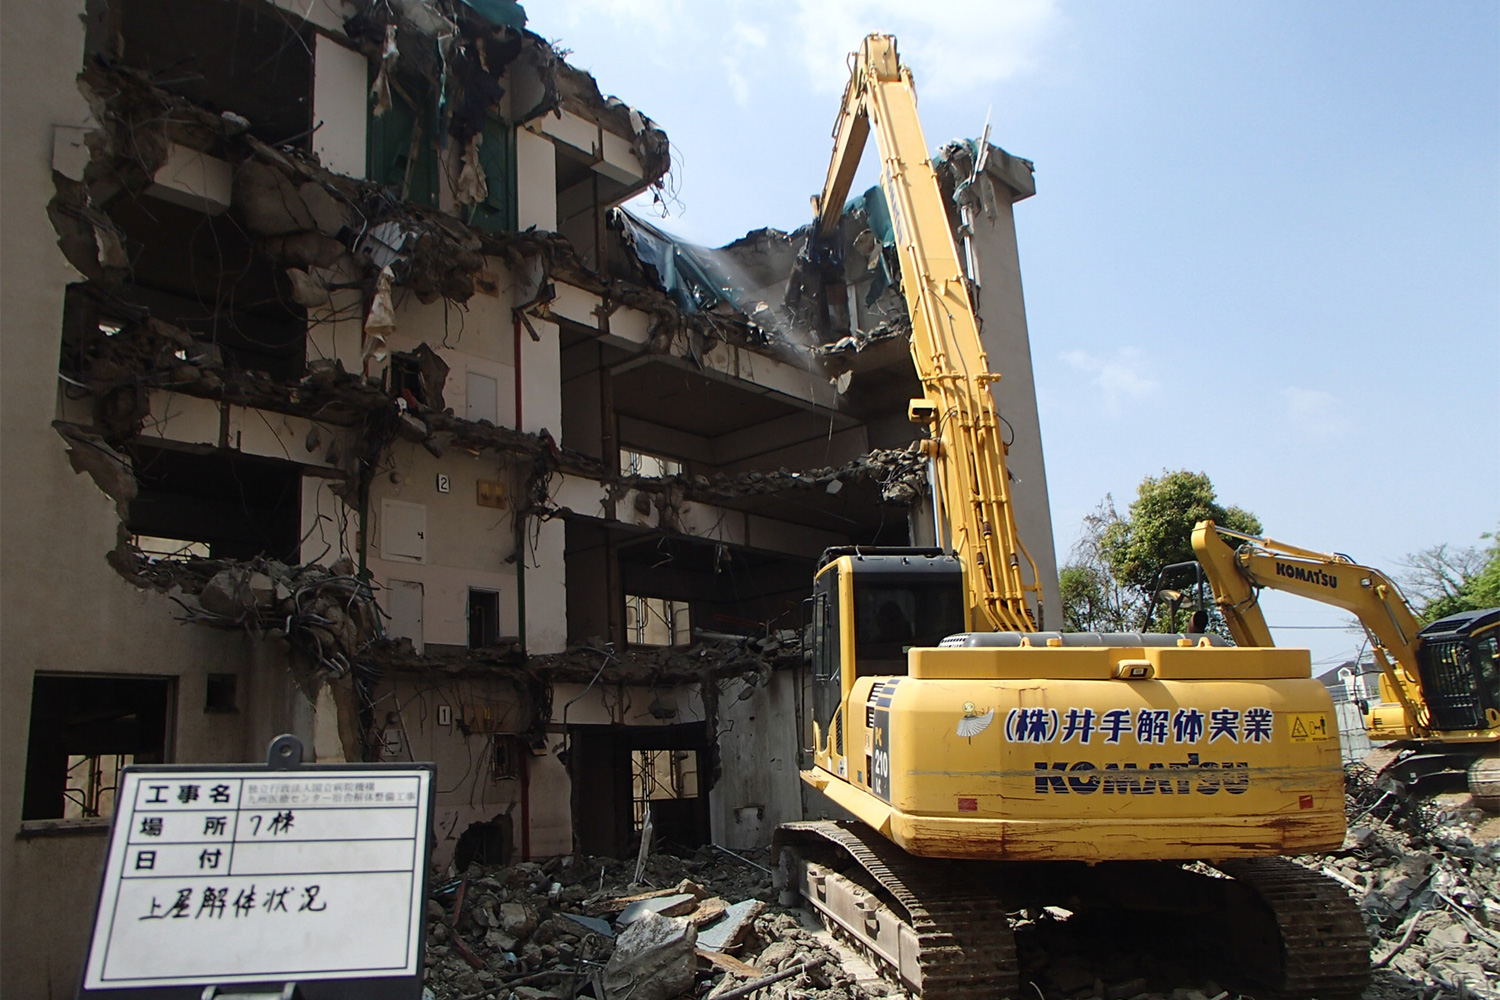 九州医療センター宿舎解体整備工事